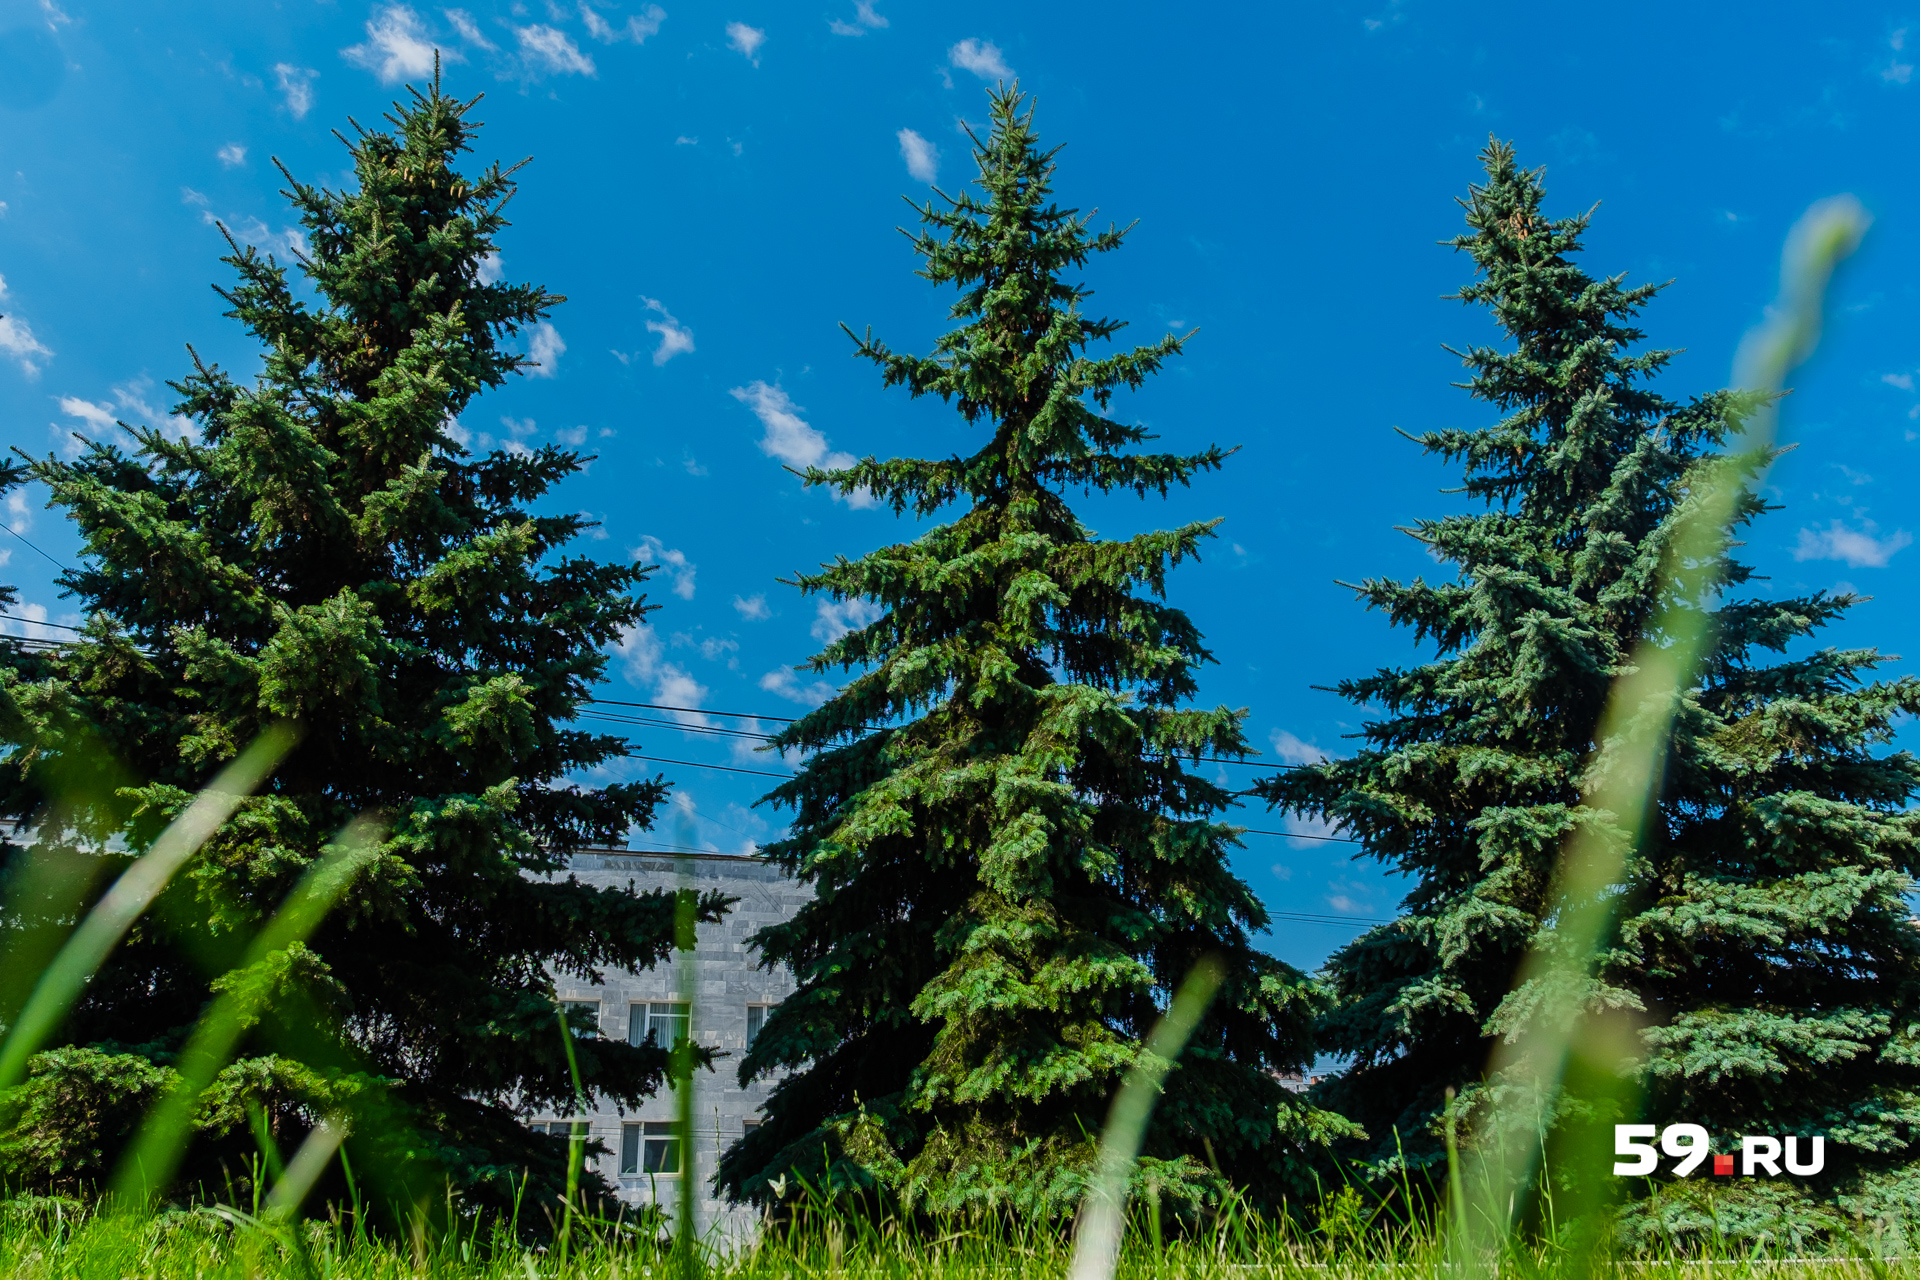 Ученые нашли в центре Перми 420 деревьев, «замурованных» в асфальт